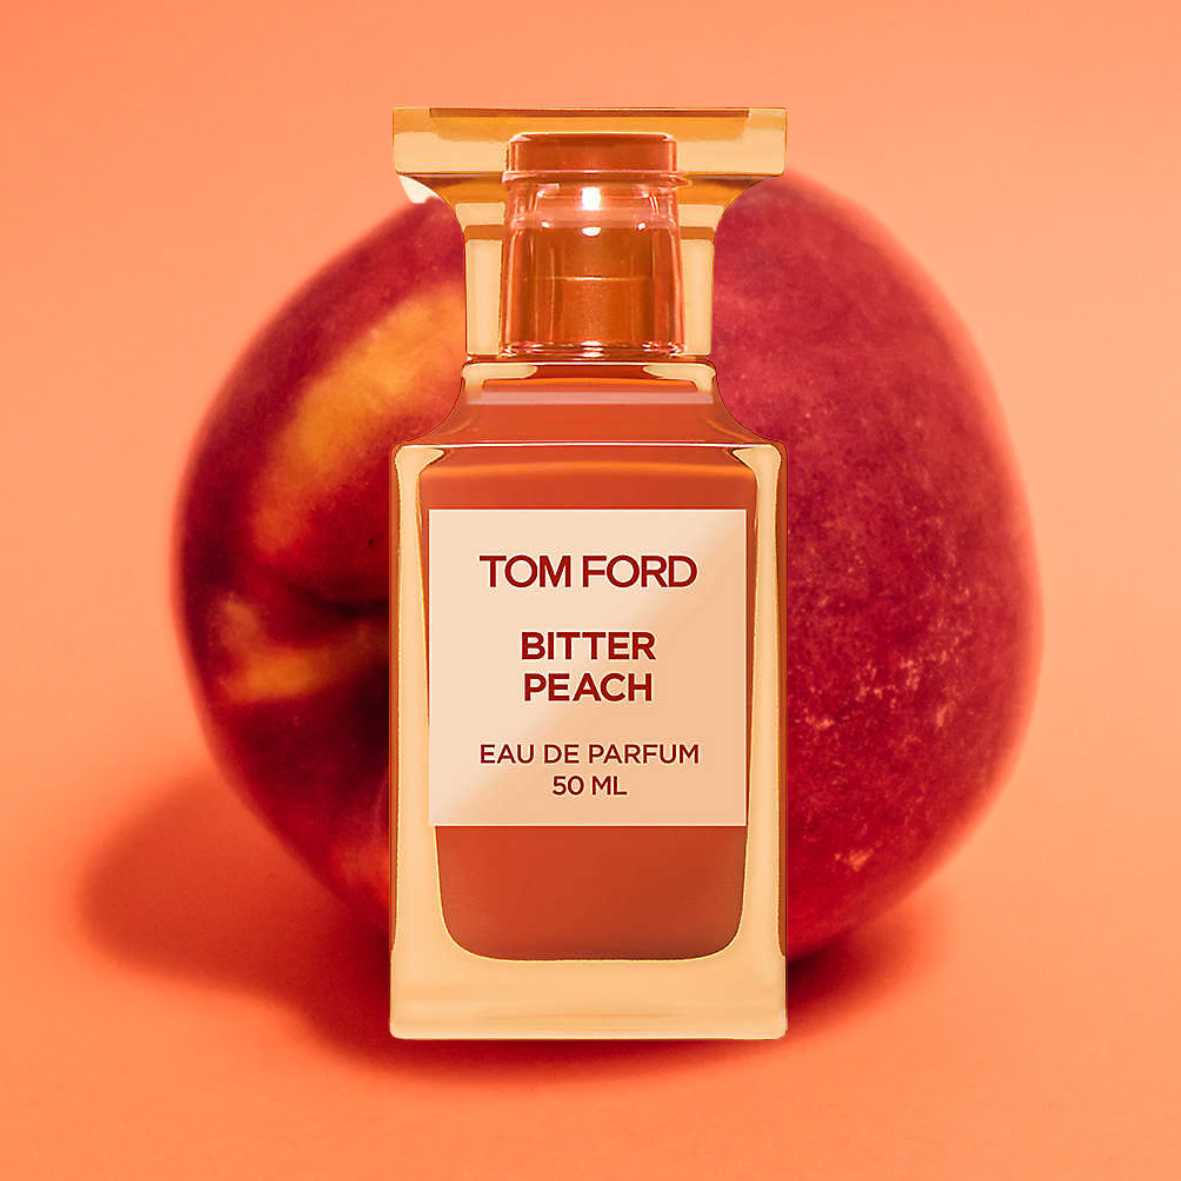 Tom Ford Bitter Peach
Best Peach Perfumes